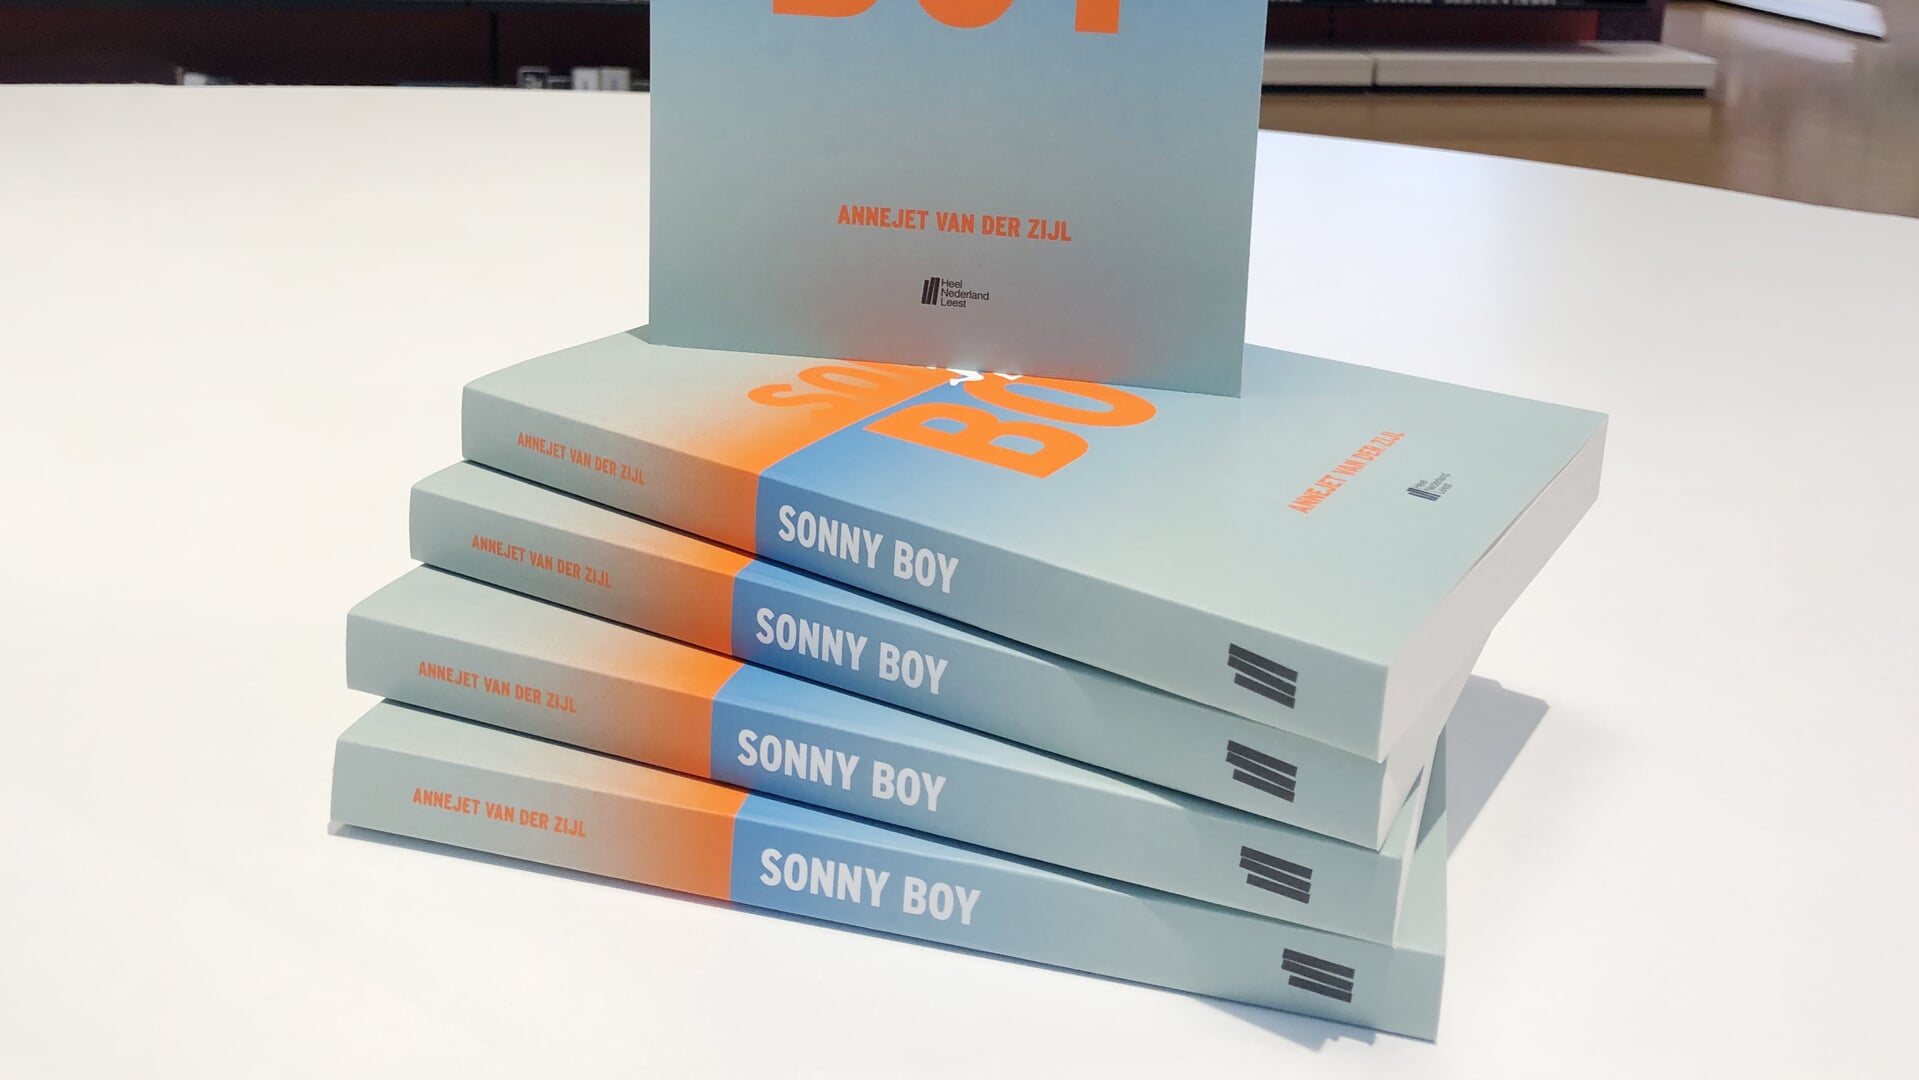 Iedereen kan het gratis boek ‘Sonny Boy’ op komen halen in één van de vestigingen van de bibliotheek.